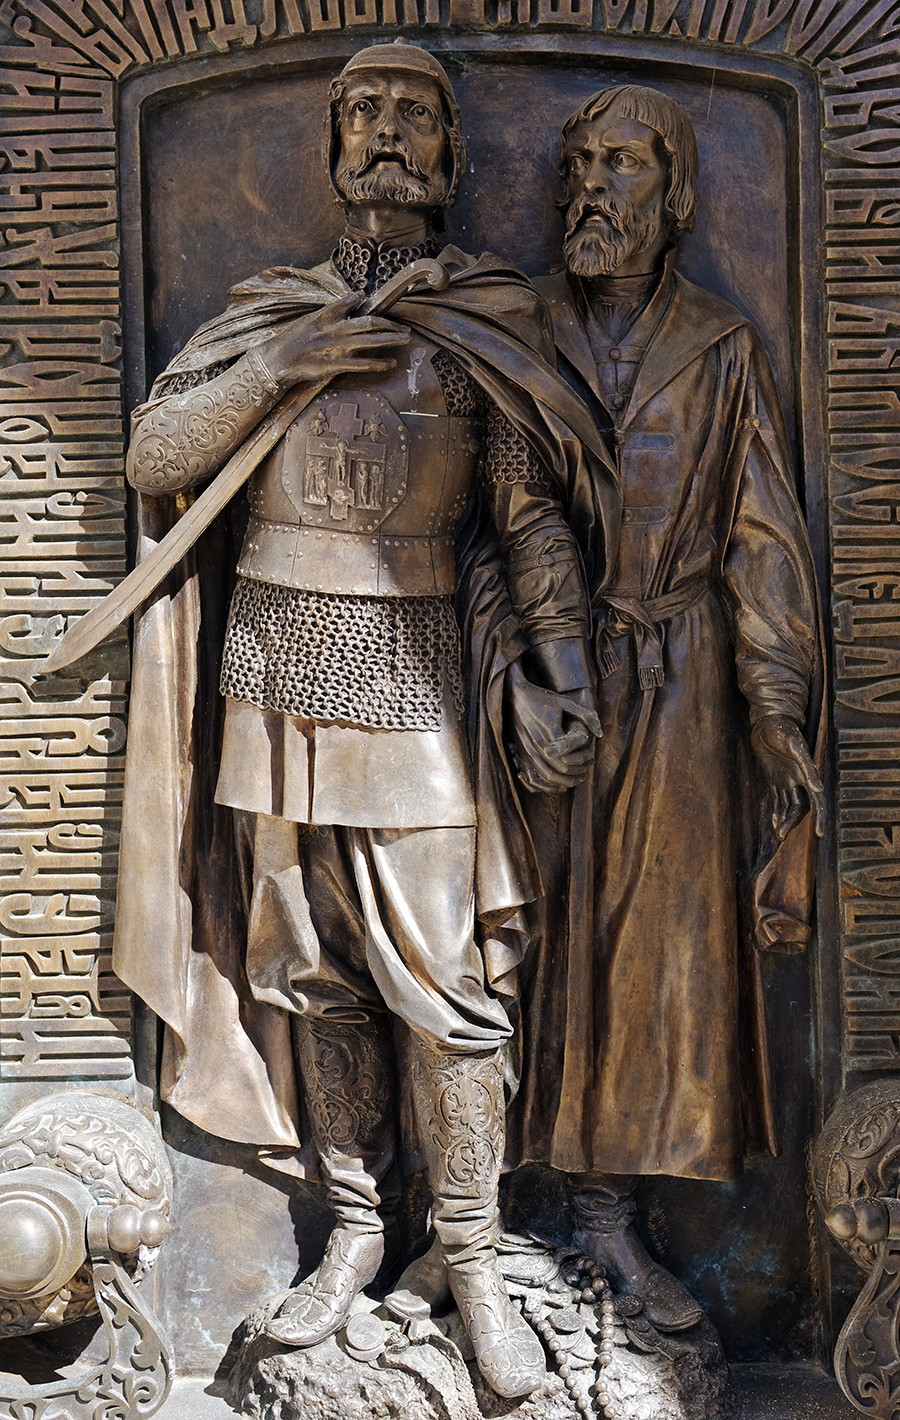 Rússia, Súzdal, Monastério do Santo Efime. relevo em bronze retratando Pojárski e Mínin na porta da capelinha que abriga o túmulo de Pojárski.